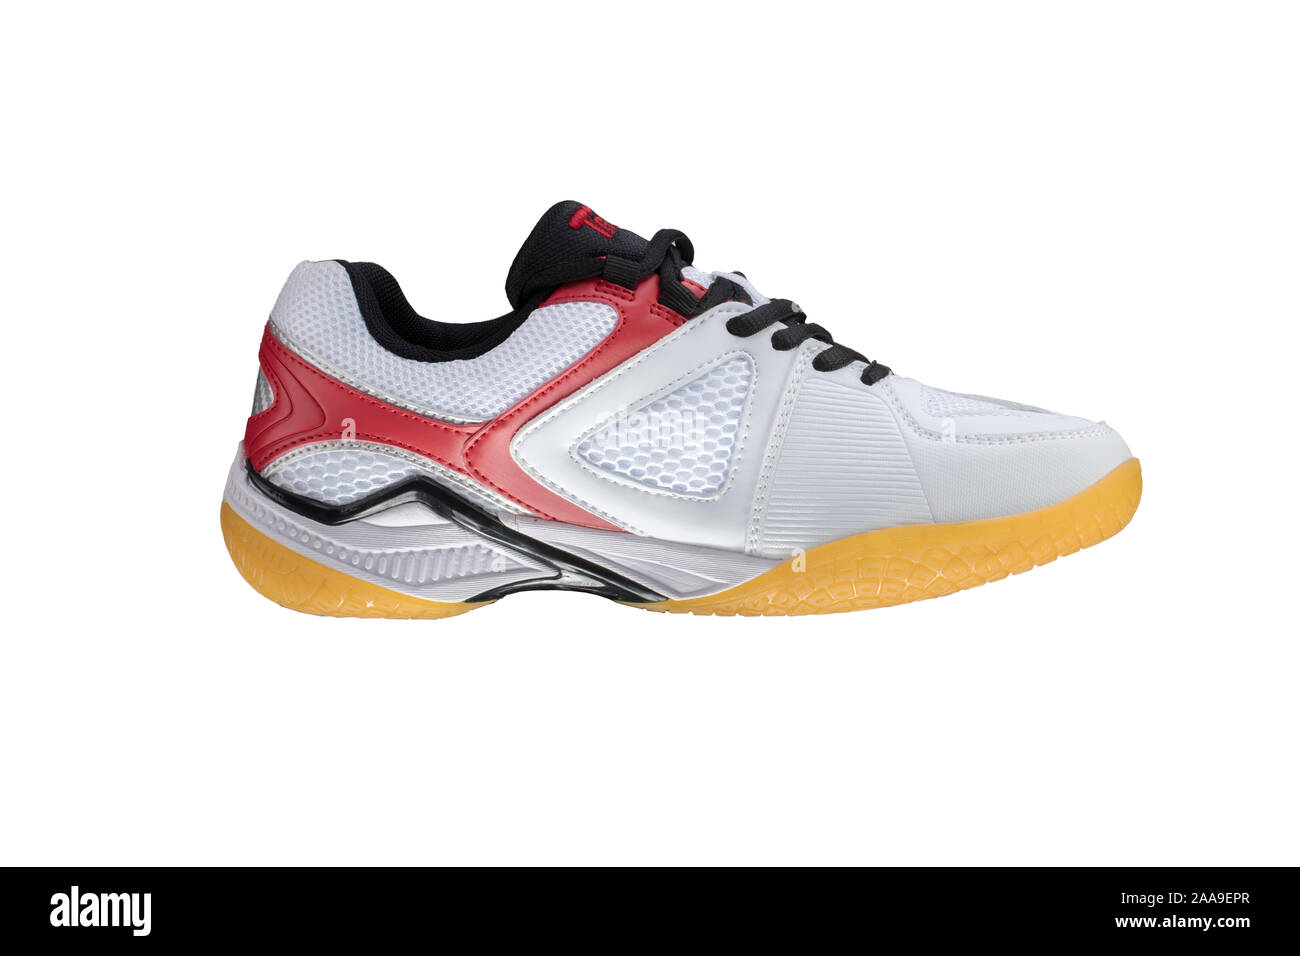 Weiße Turnschuhe mit roten Streifen auf weißem Hintergrund. Sport Schuhe  Stockfotografie - Alamy